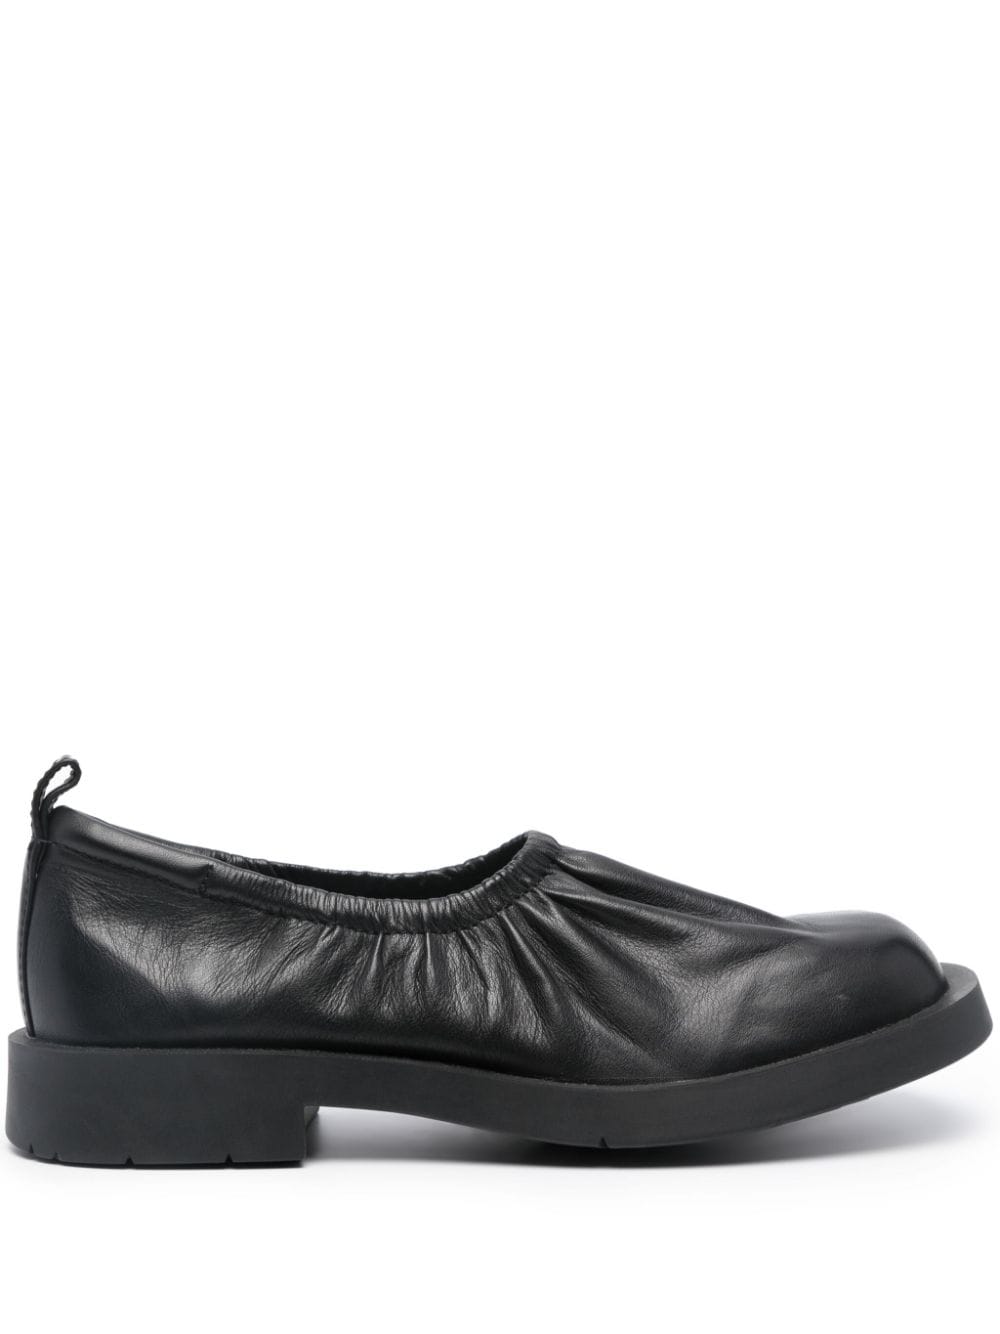 CamperLab Mil 1978 ballerina shoes - Black von CamperLab